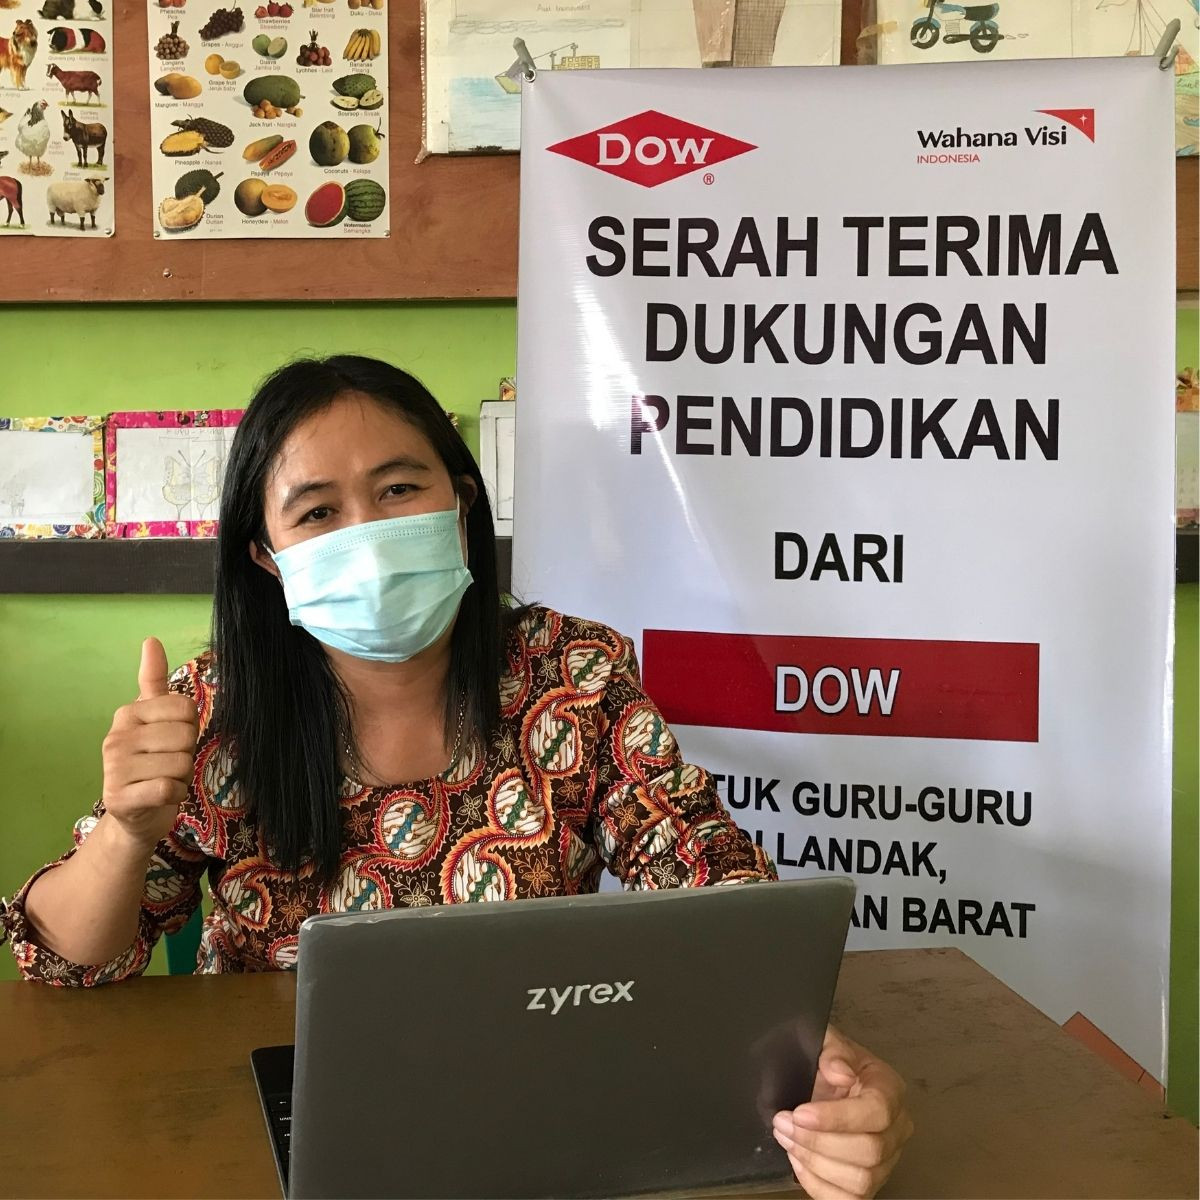 Dukung Pendidikan Masa Pandemi, Dow Berikan Bantuan Edukasi di Jakarta dan Landak